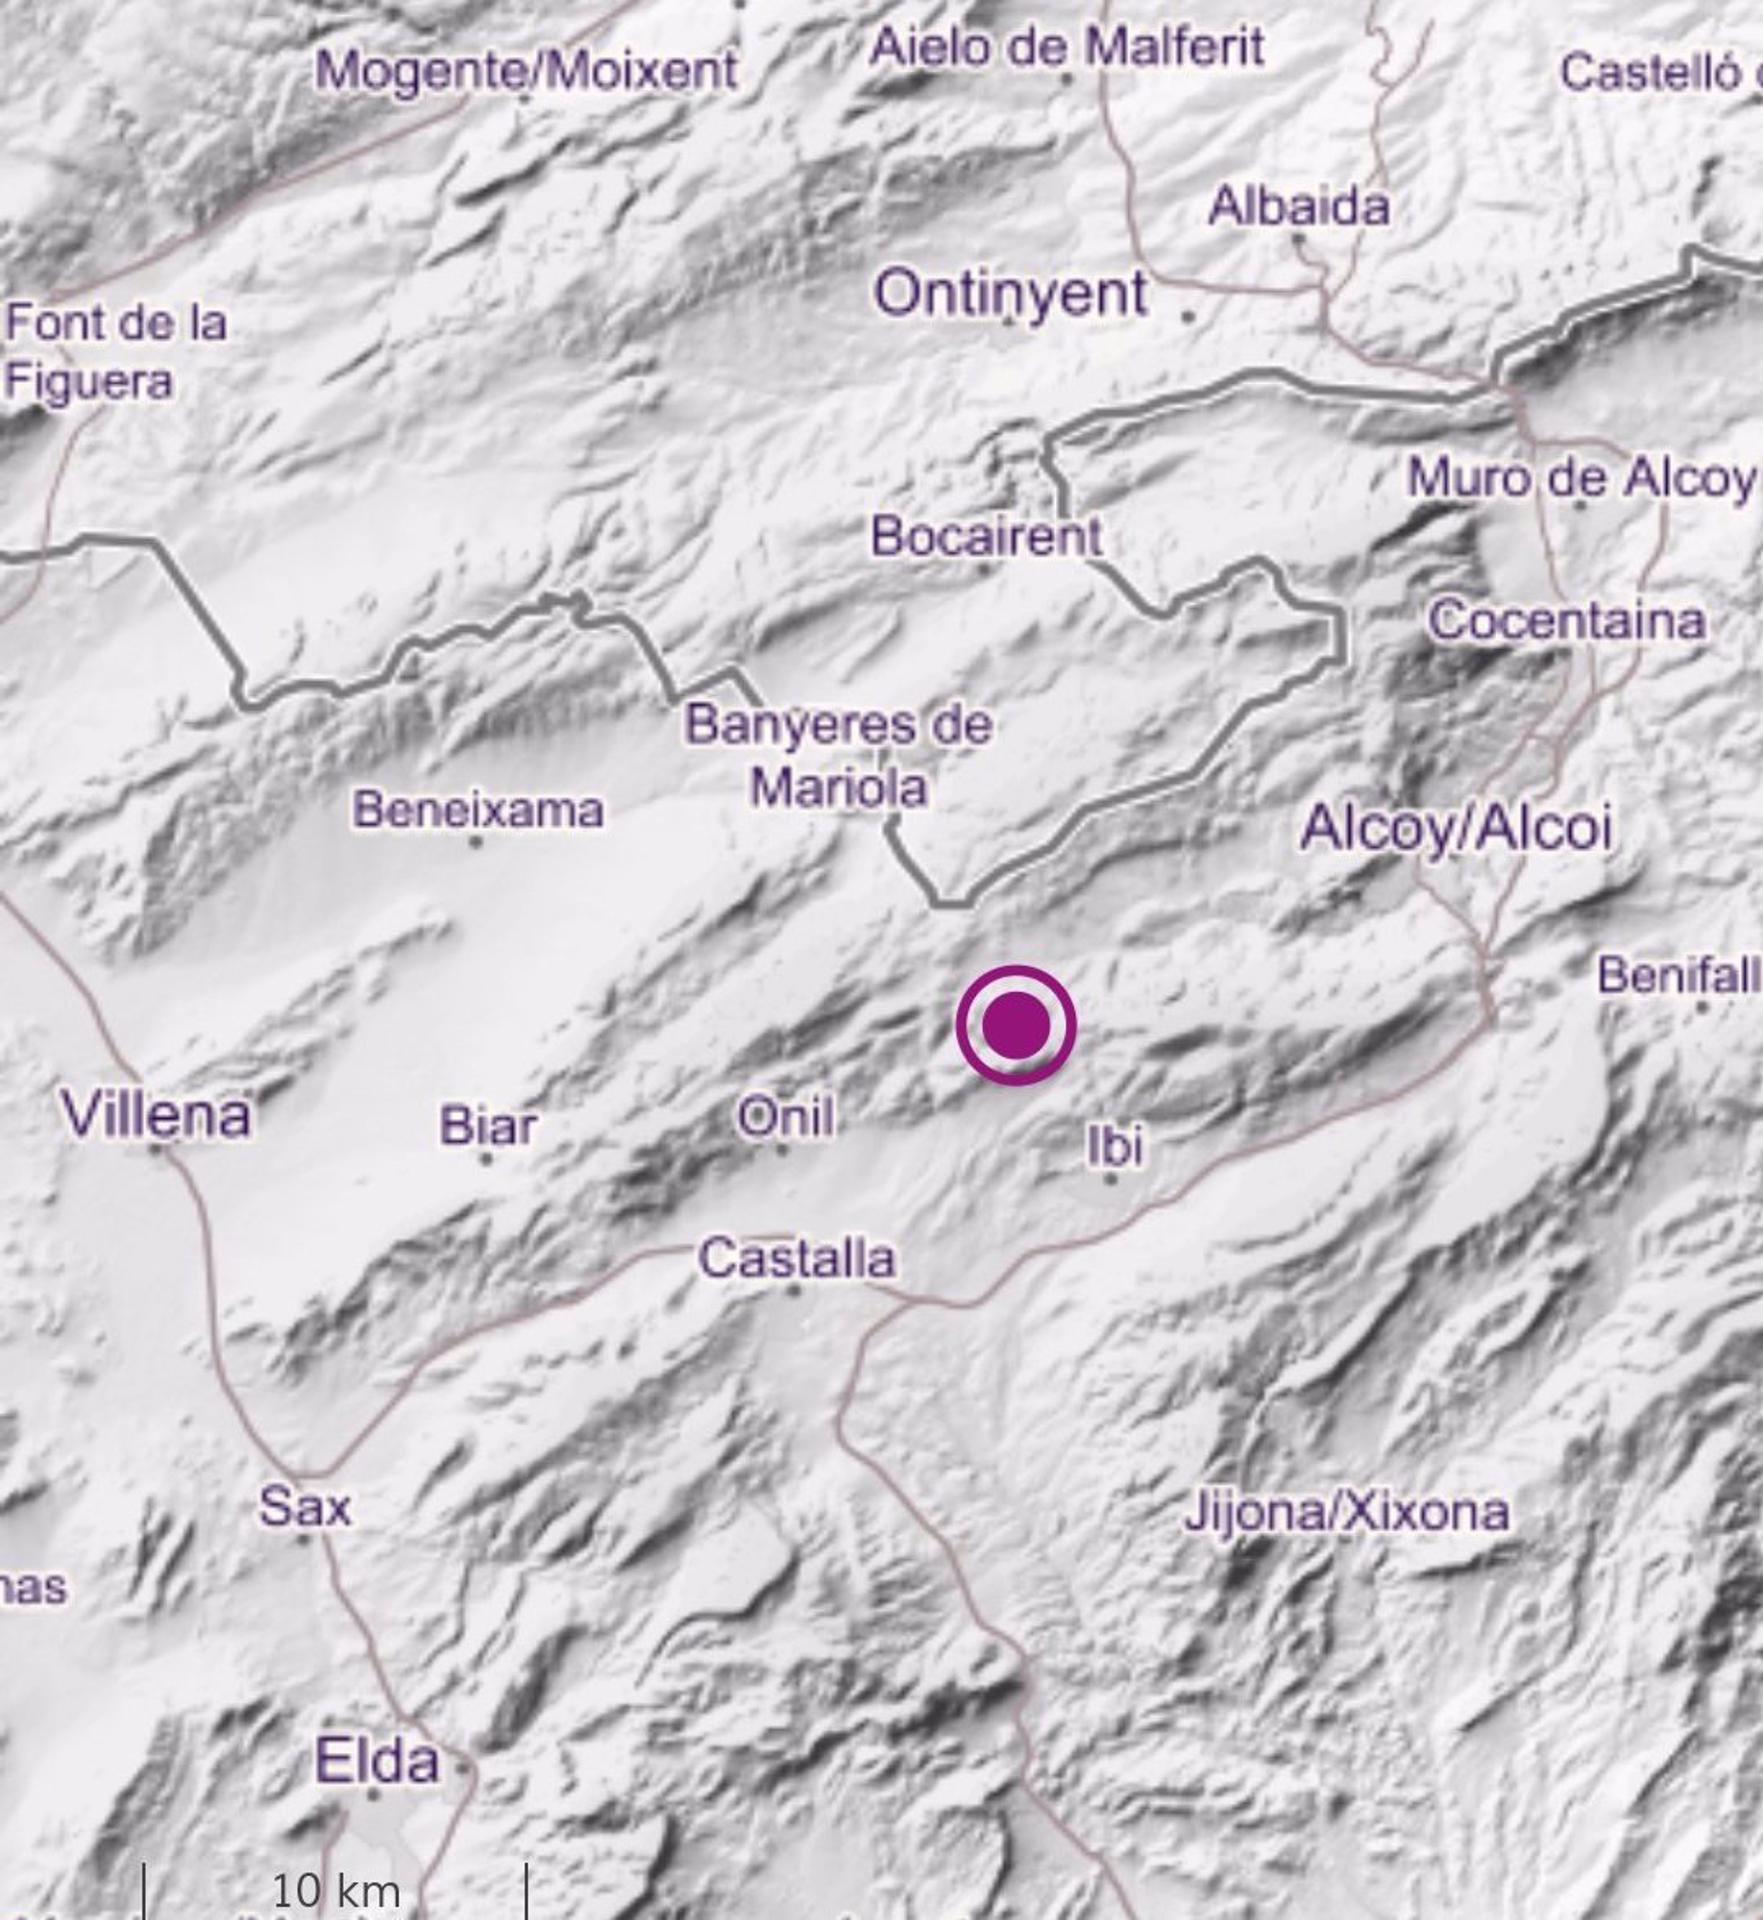 Mapa de la zona donde ha tenido lugar el terremoto.